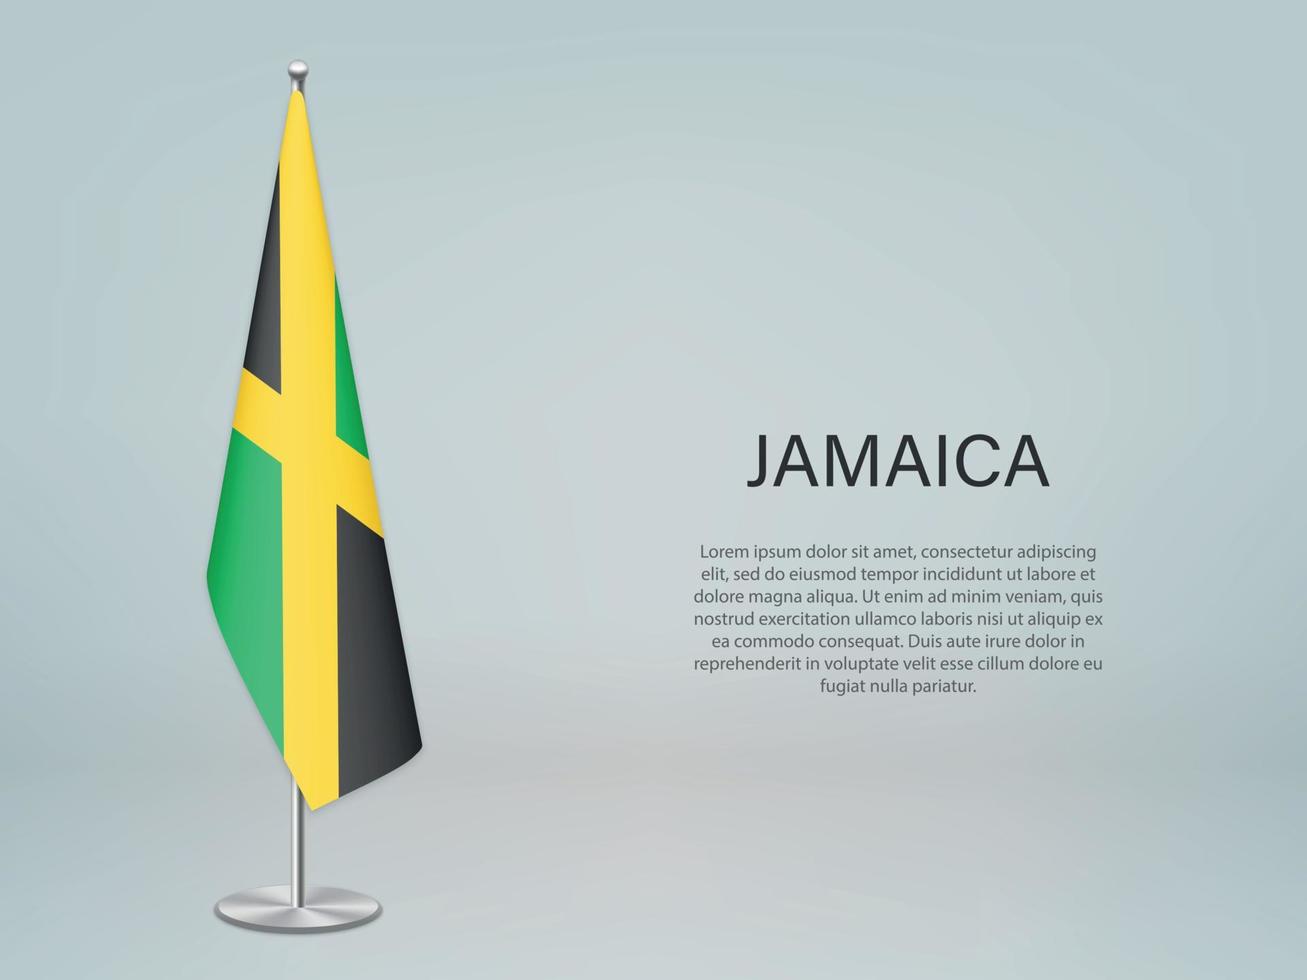 jamaicana pendurada bandeira no stand. modelo de banner de conferência vetor